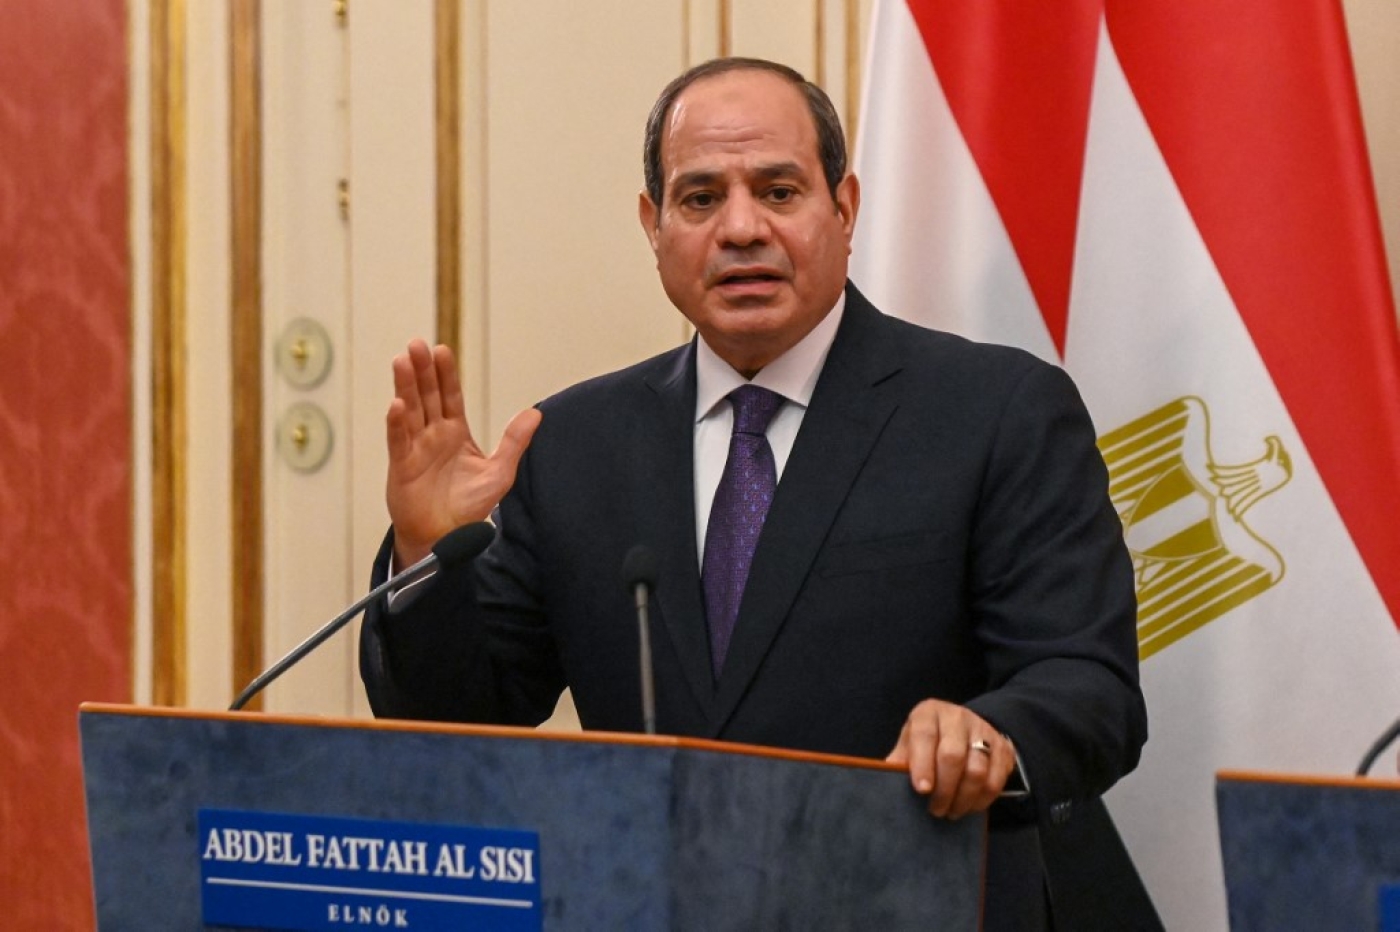 Le président égyptien Abdel Fattah al-Sissi s’exprime à Budapest, le 12 octobre 2021. Avec son nouveau complexe pénitentiaire, la capacité carcérale totale du pays pourrait s’envoler à plusieurs centaines de milliers de détenus (AFP)